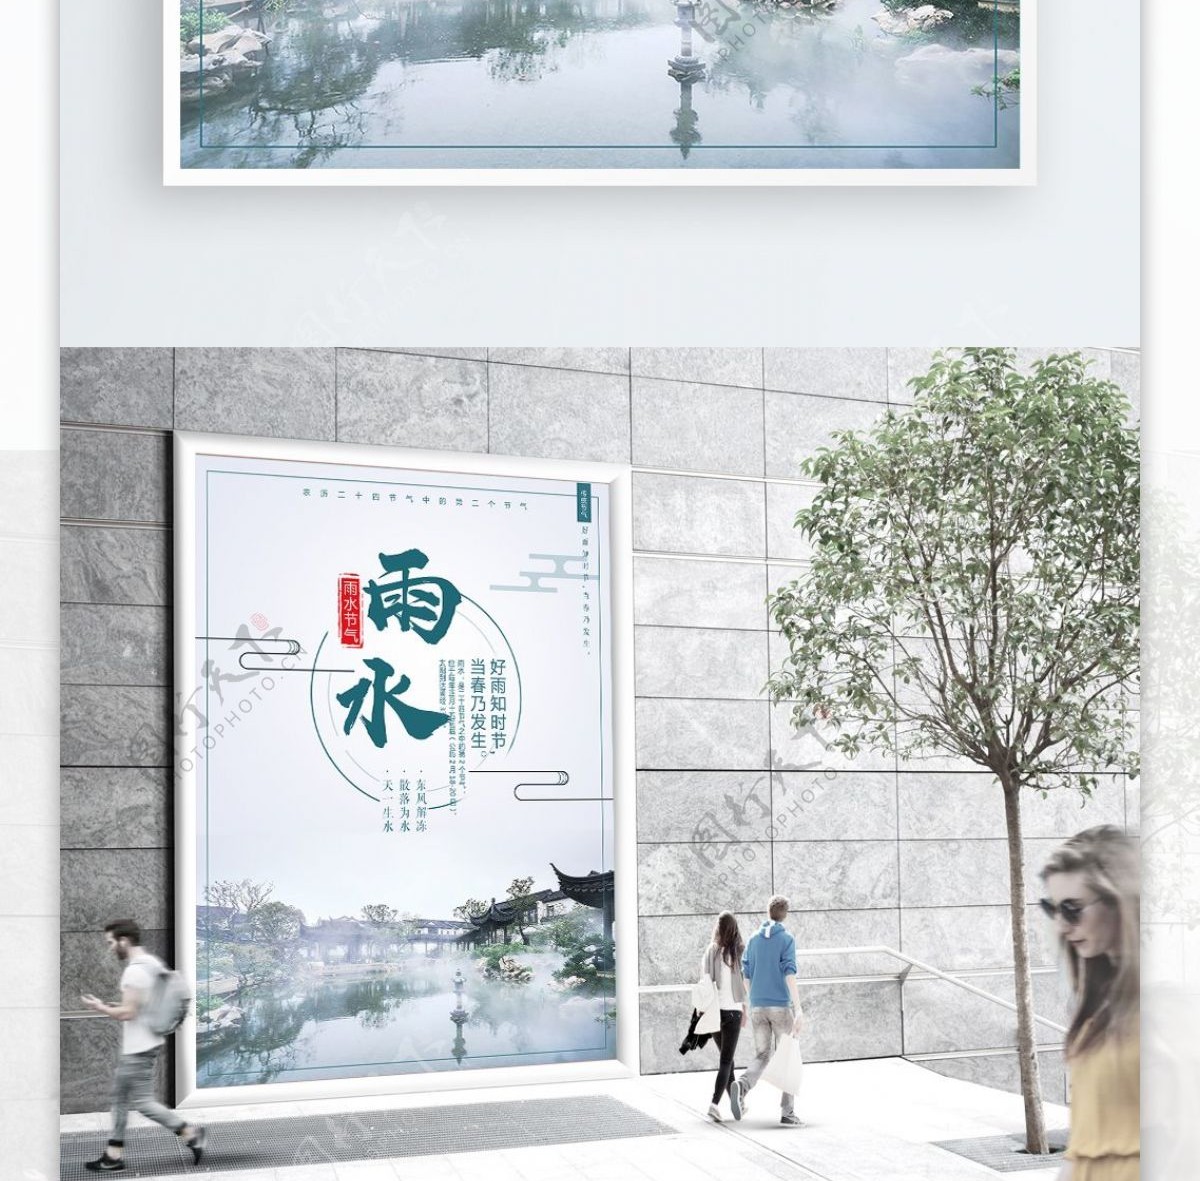 中国风二十四节气雨水海报设计